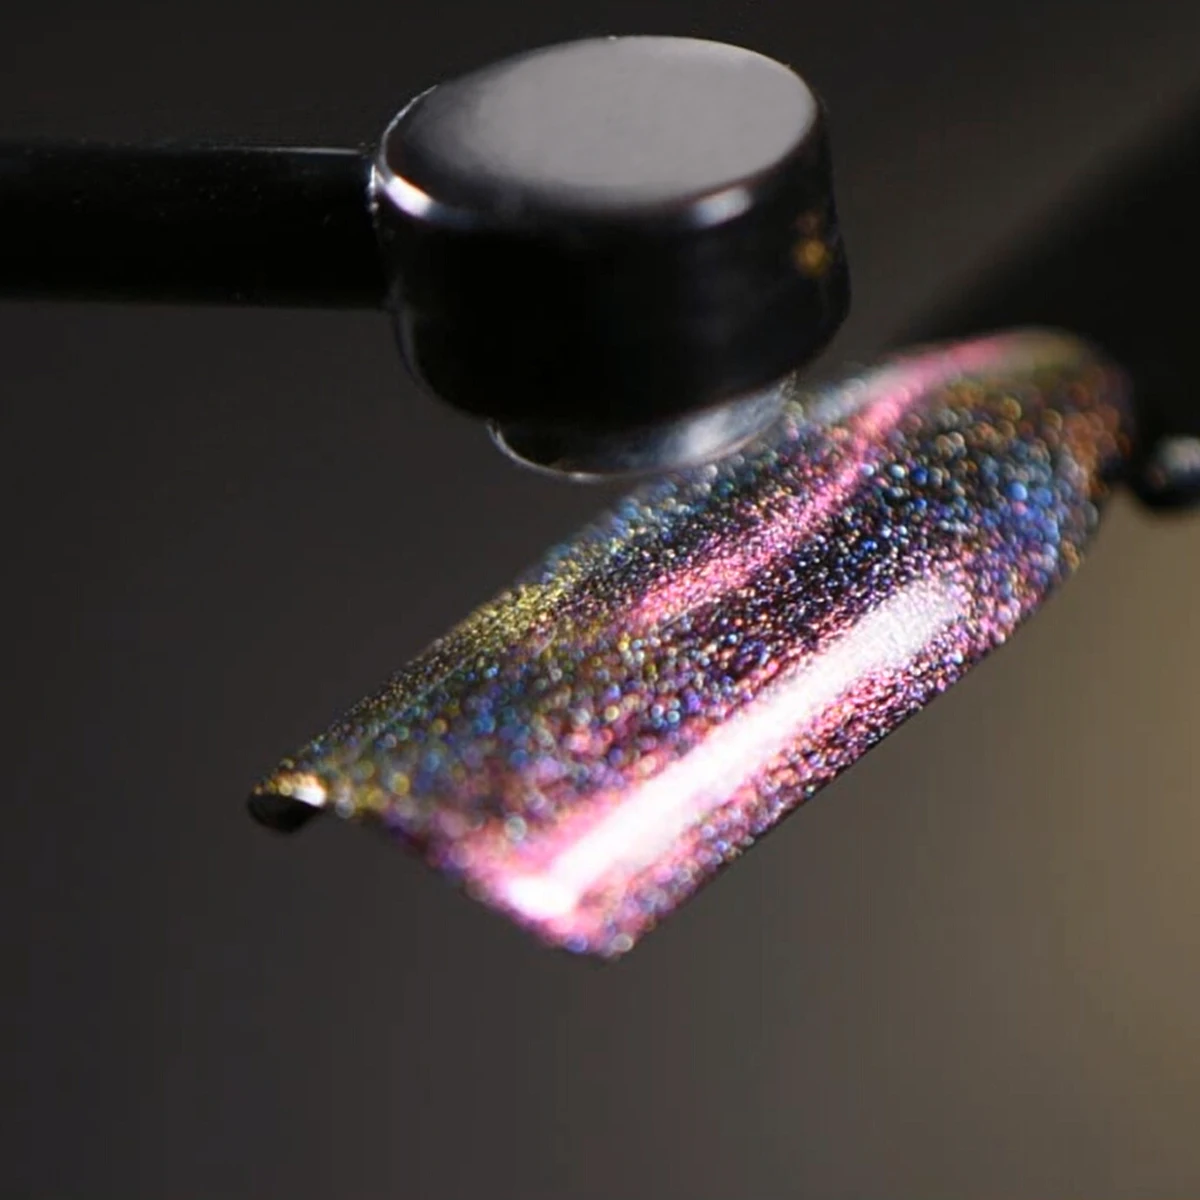 BeautyBigBang 6 мл 3D лак для ногтей с эффектом «кошачий глаз» блеск лак Магнит лак для ногтей голографический Хамелеон для использования с магнитом Aurora Series